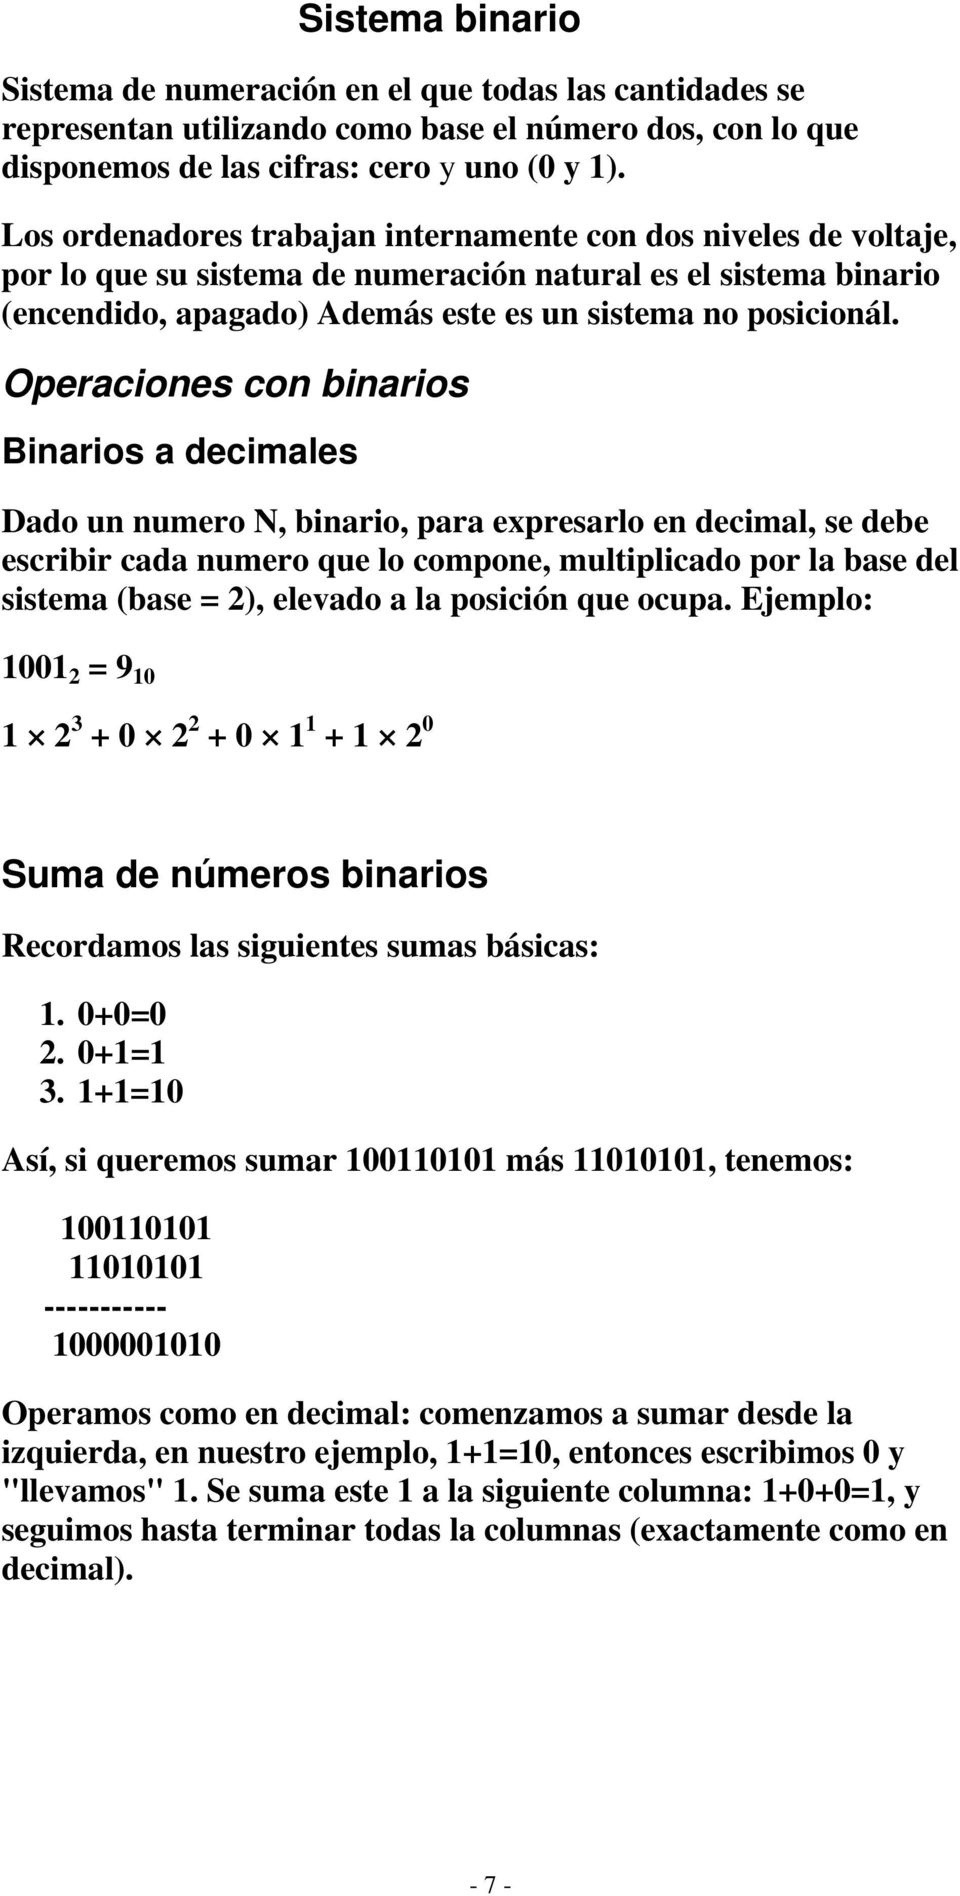 Operaciones con binarios Binarios a decimales Dado un numero N, binario, para expresarlo en decimal, se debe escribir cada numero que lo compone, multiplicado por la base del sistema (base = 2),